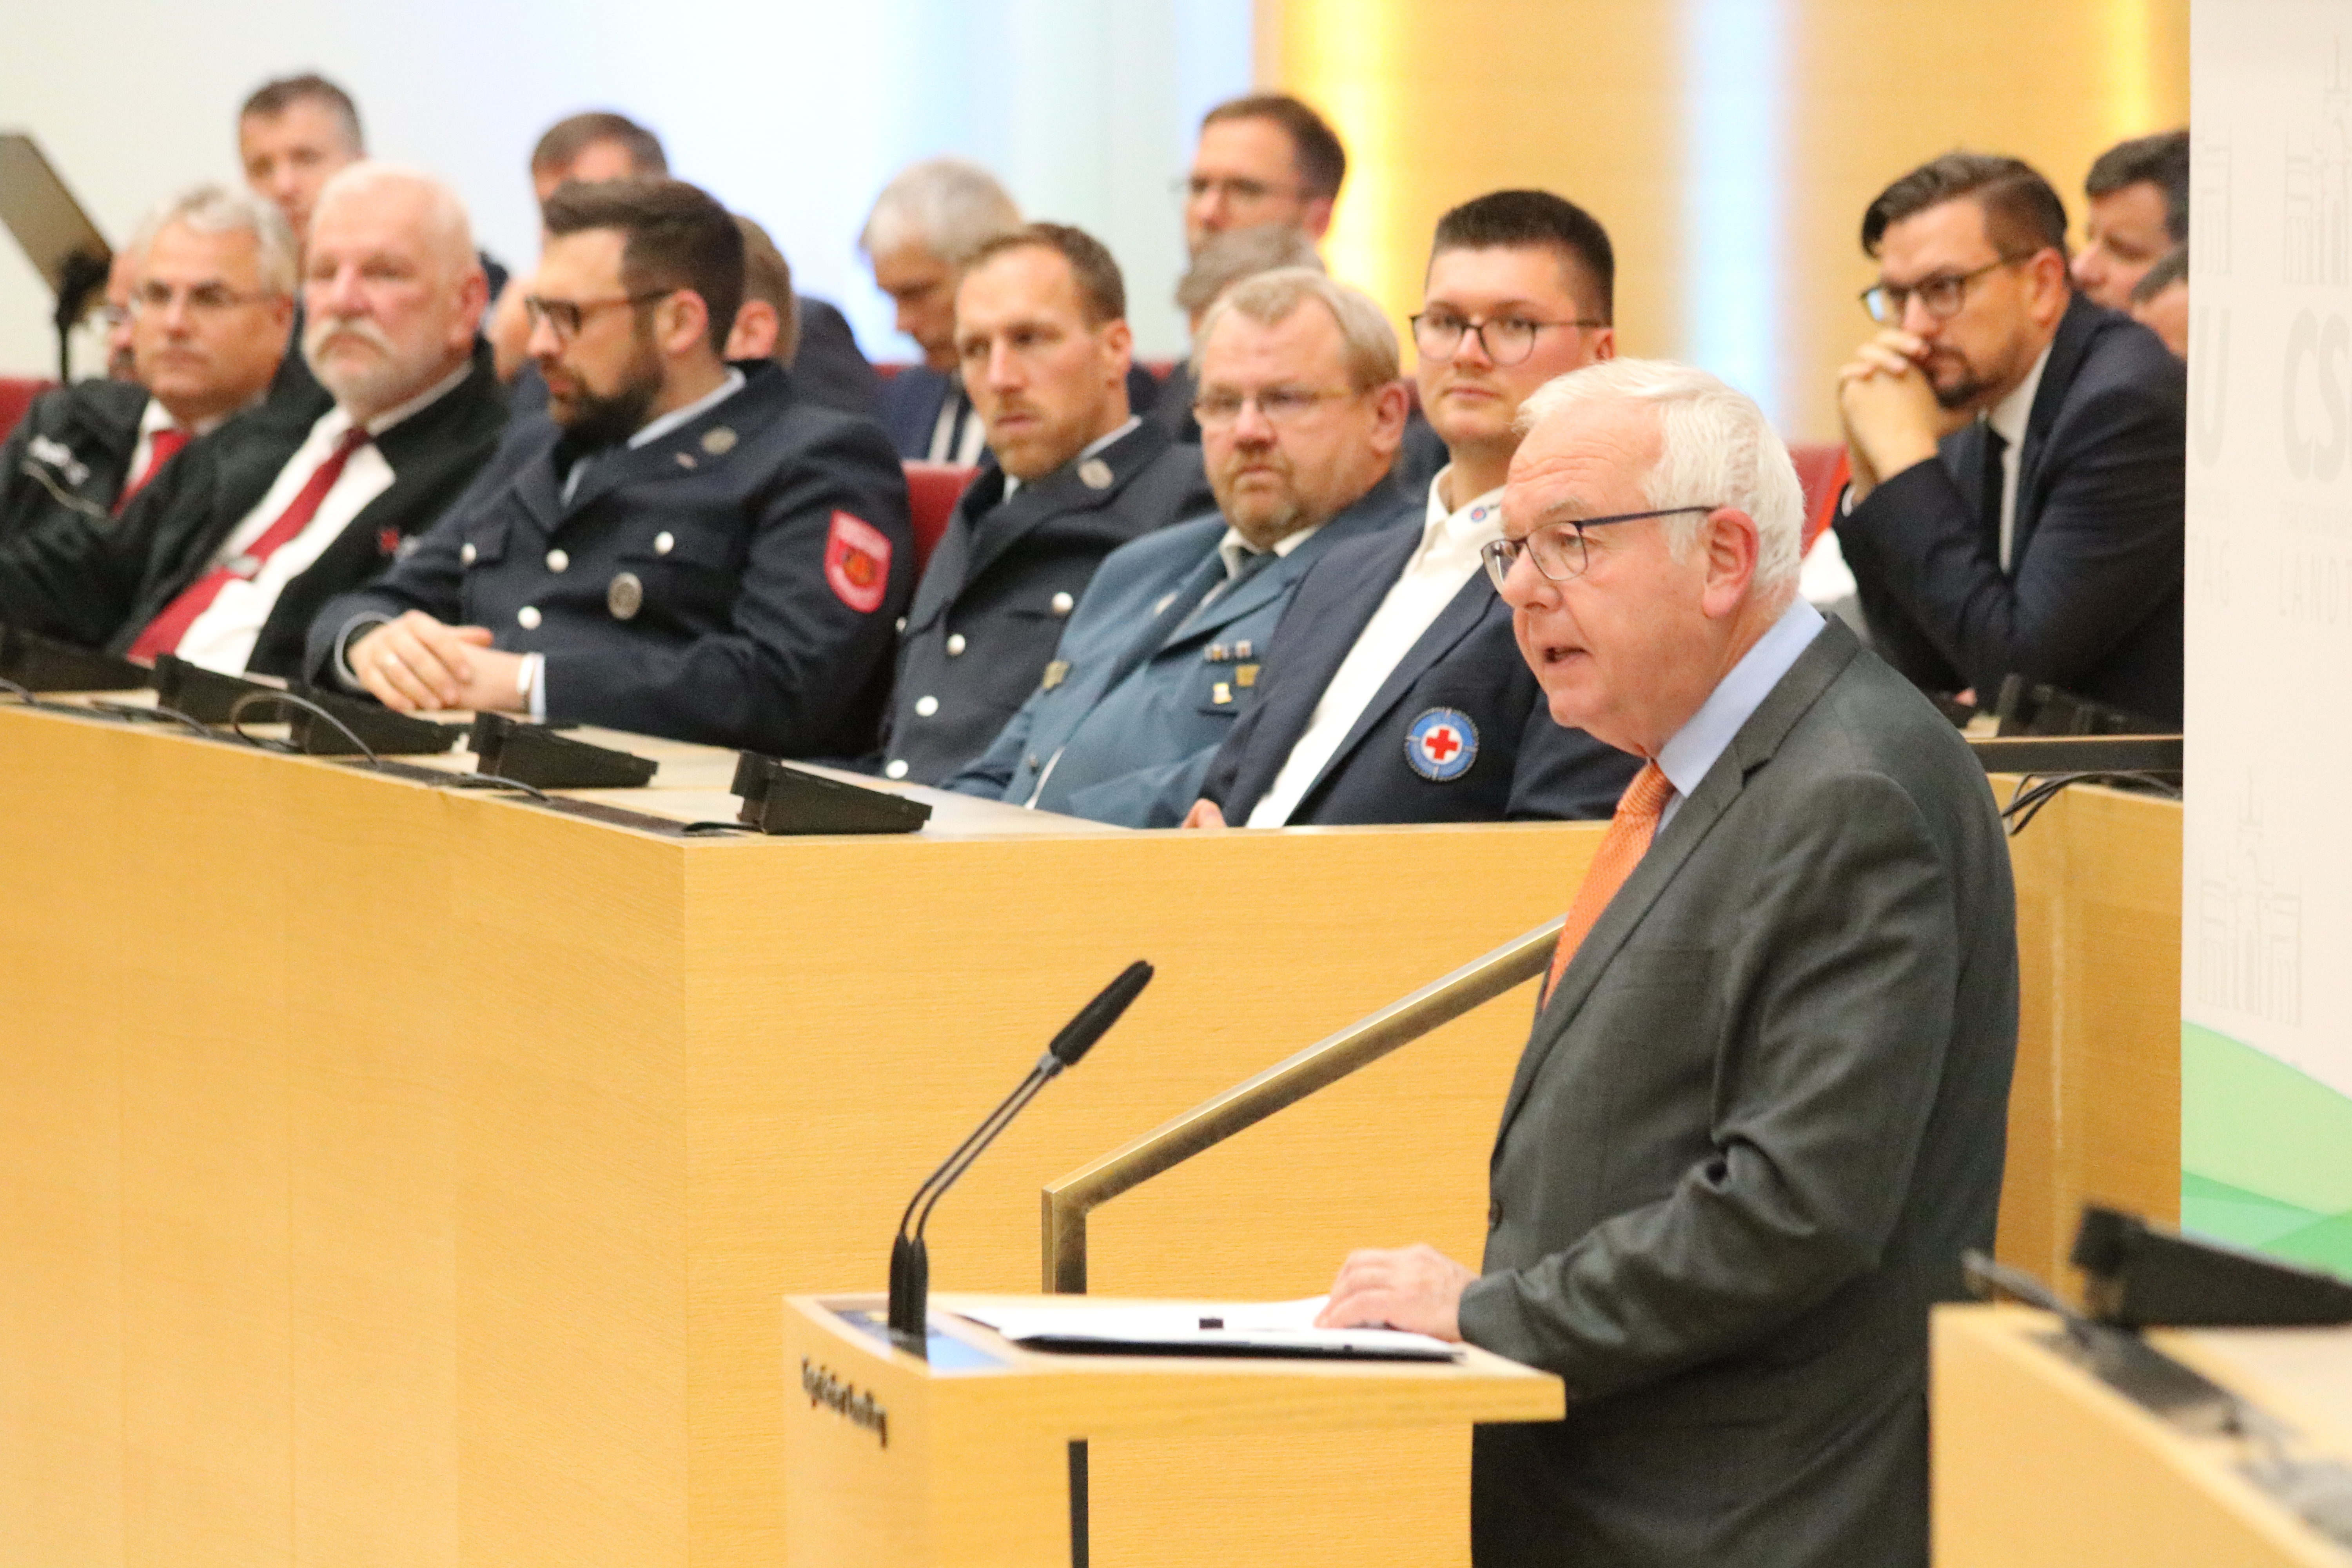 Fraktionsvorsitzender Thomas Kreuzer drückte in seiner Begrüßung seine Wertschätzung aus: In Bayern zu leben bedeute, sicherer zu leben. (Foto: CSU-Fraktion)